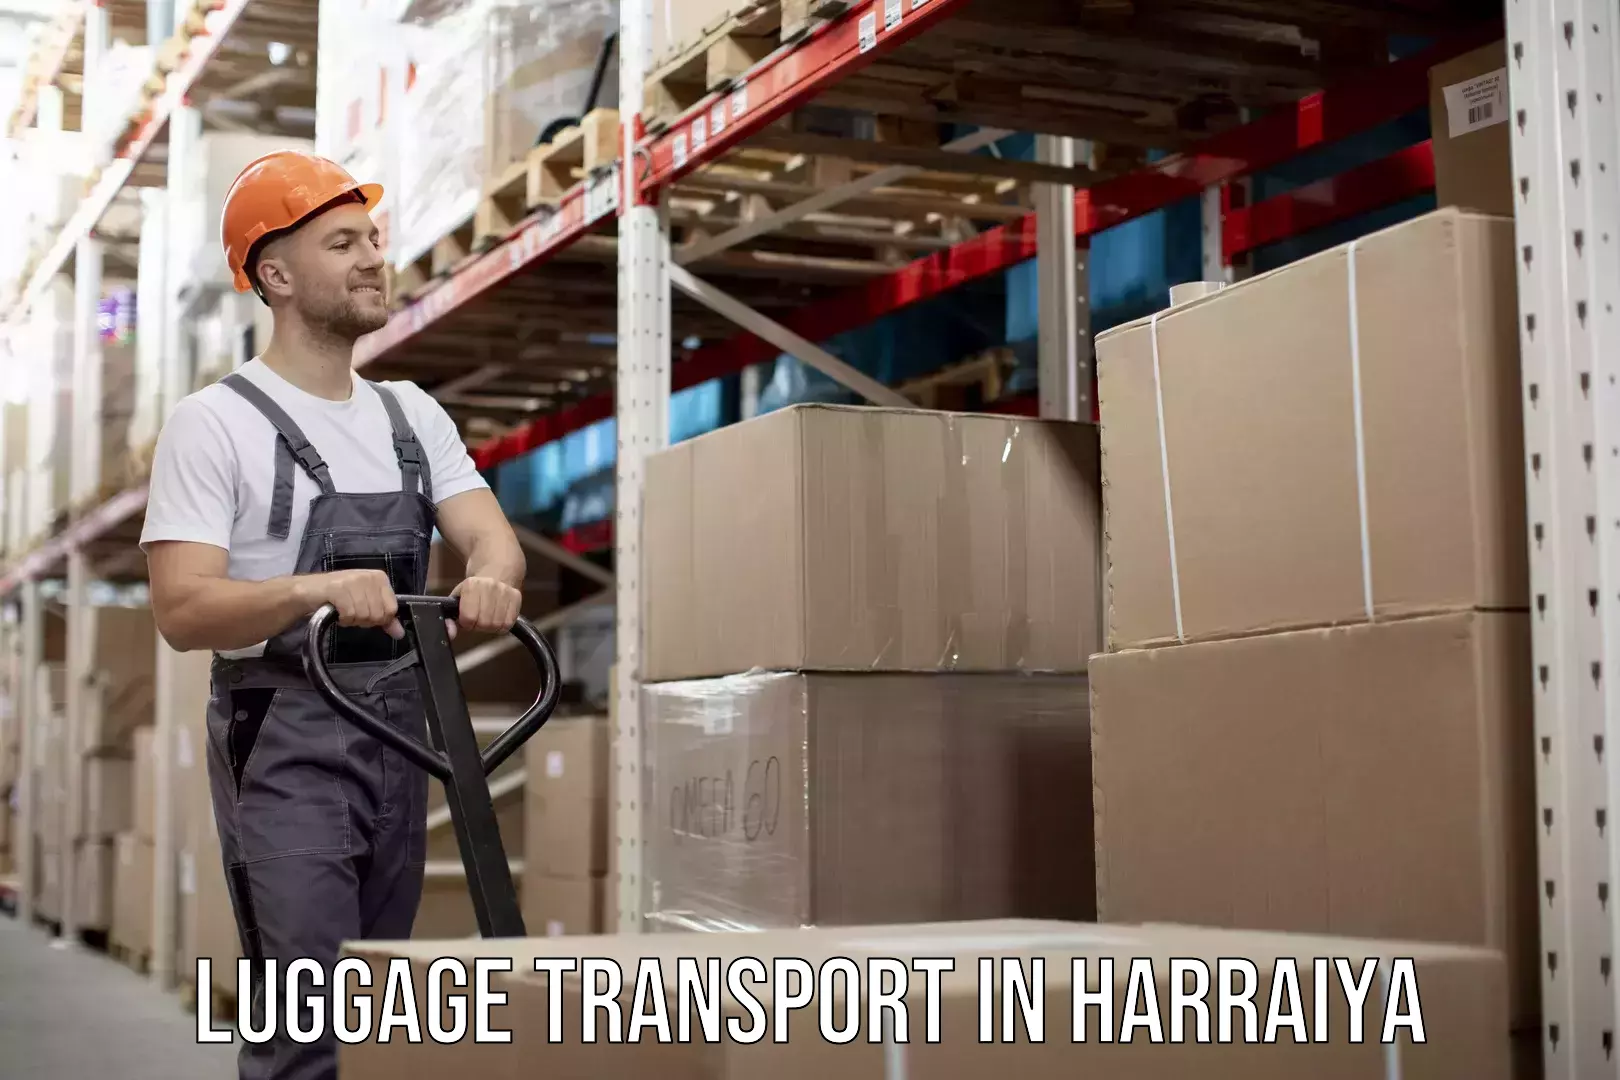 Regional luggage transport in Harraiya